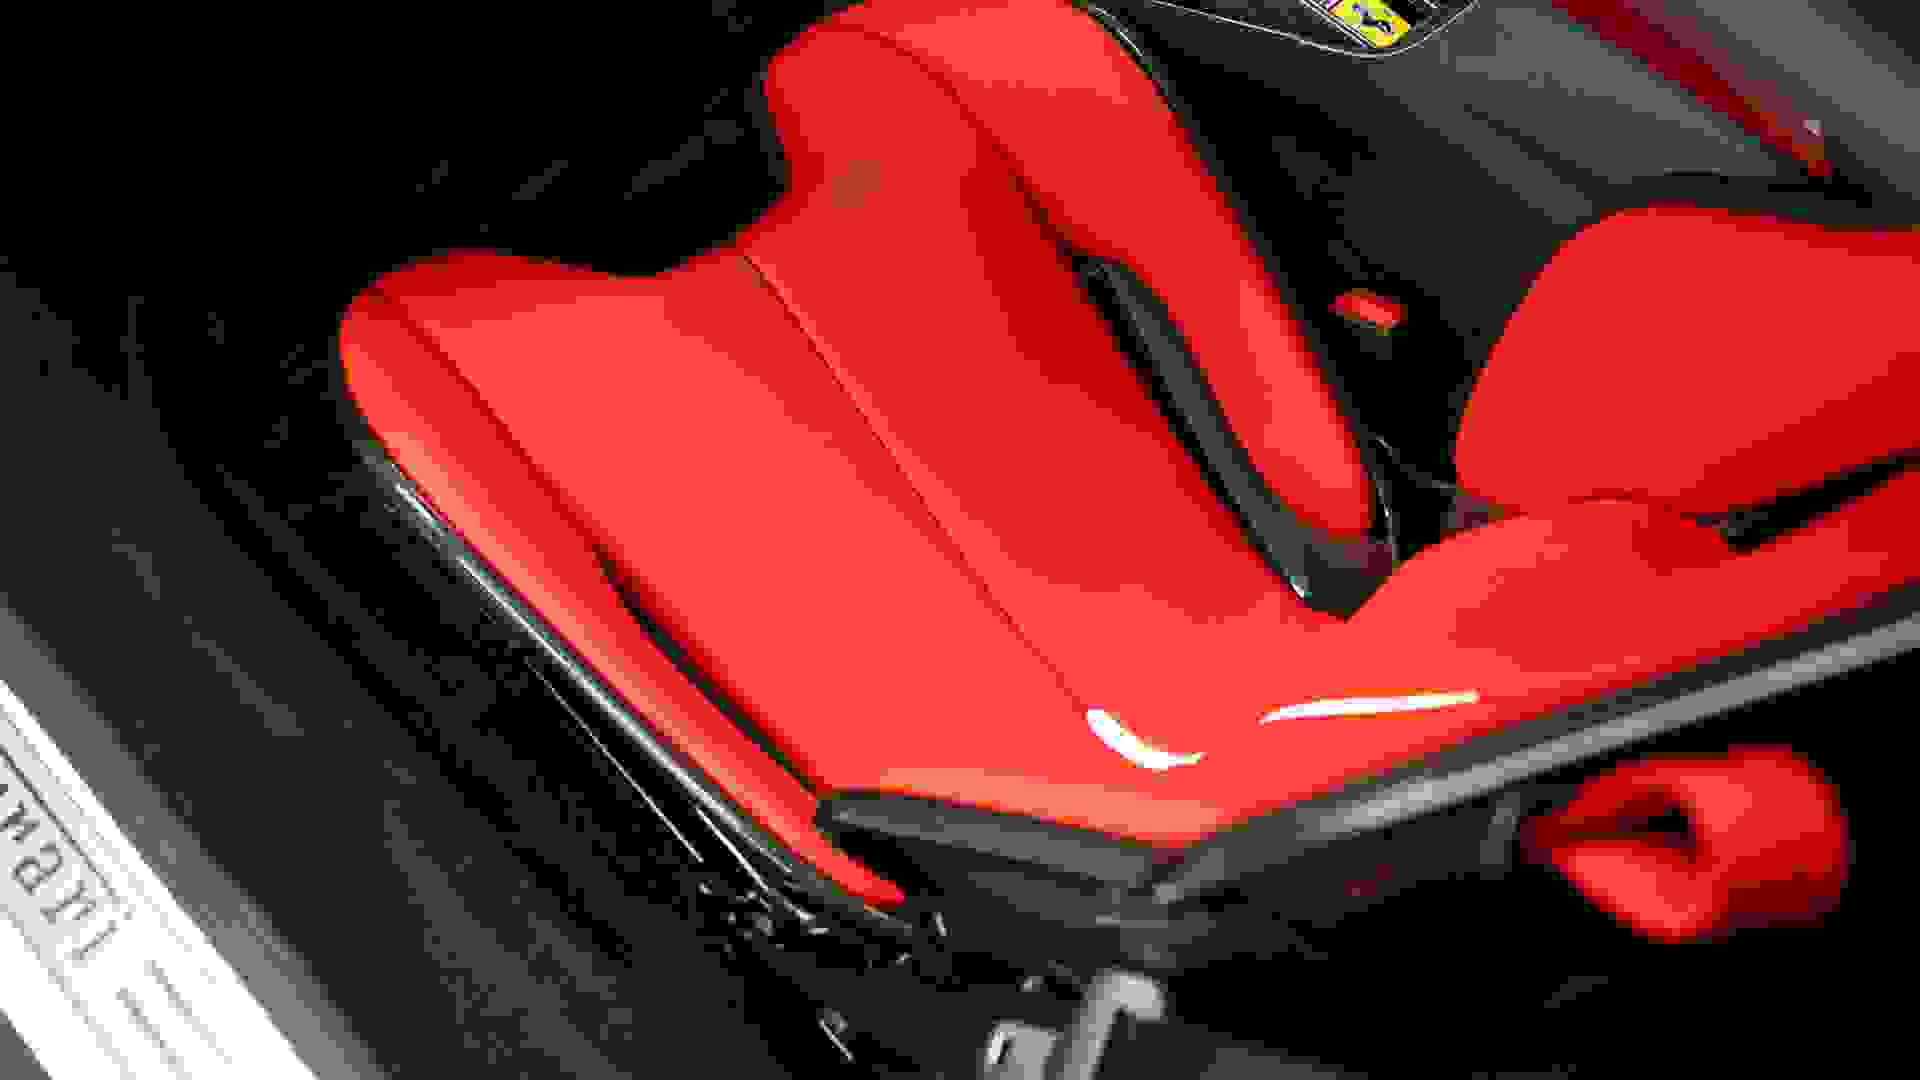 Ferrari SF90 Photo 24b1fc56-3a1a-4fbe-a936-5195d2ab74a6.jpg